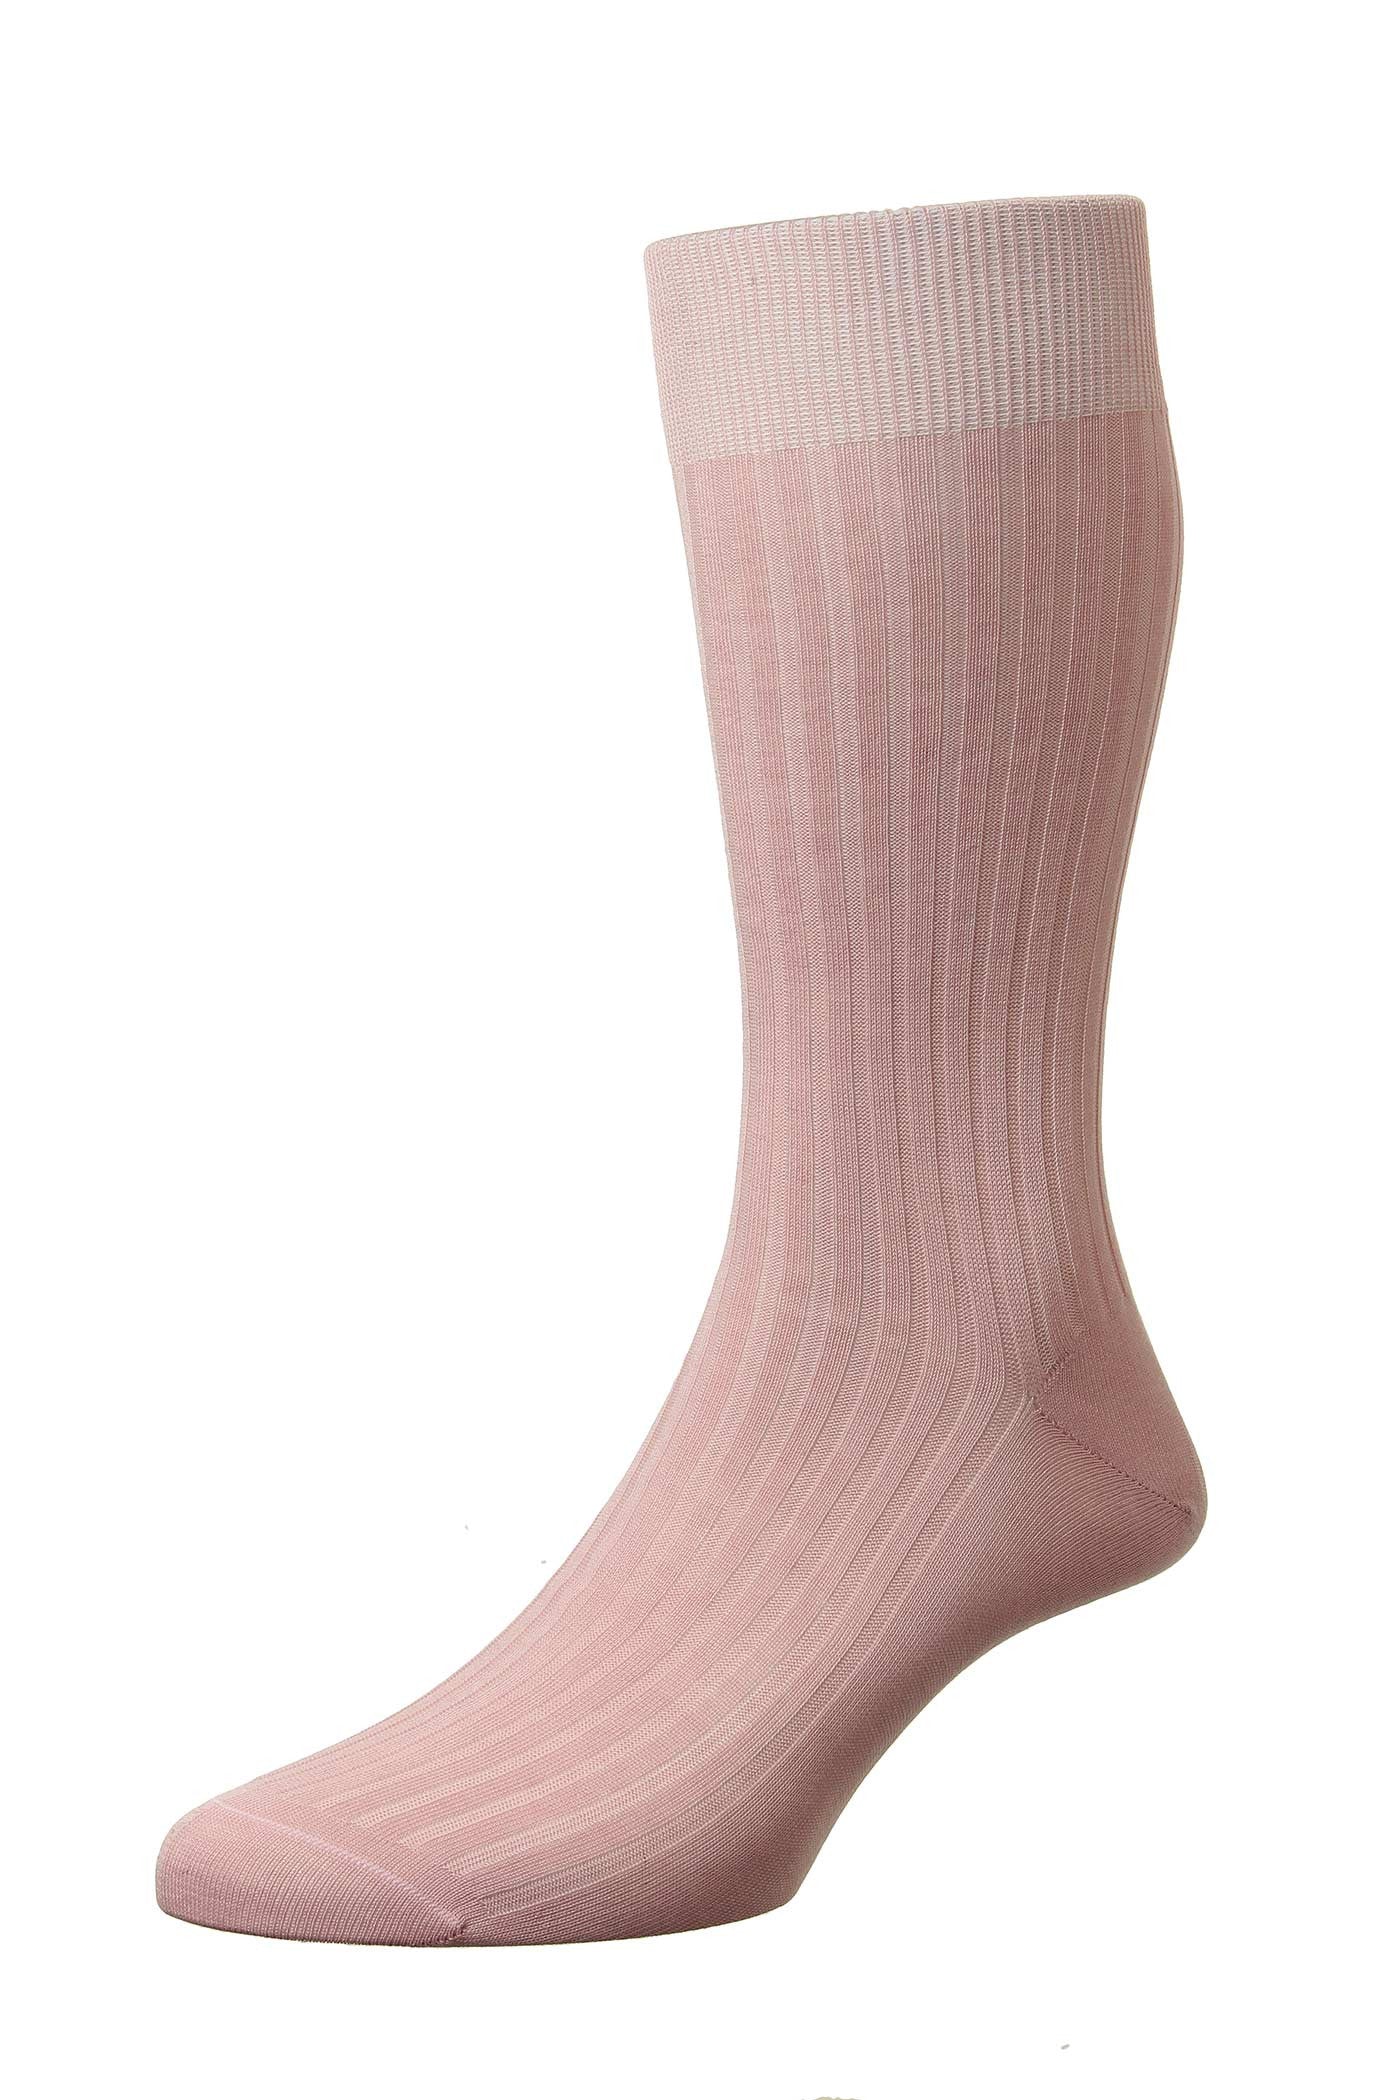 Men's Socks - Danvers (5614) 5x3 Rib Fil d'Ecosse / Cotton Lisle - DUSKY PINK